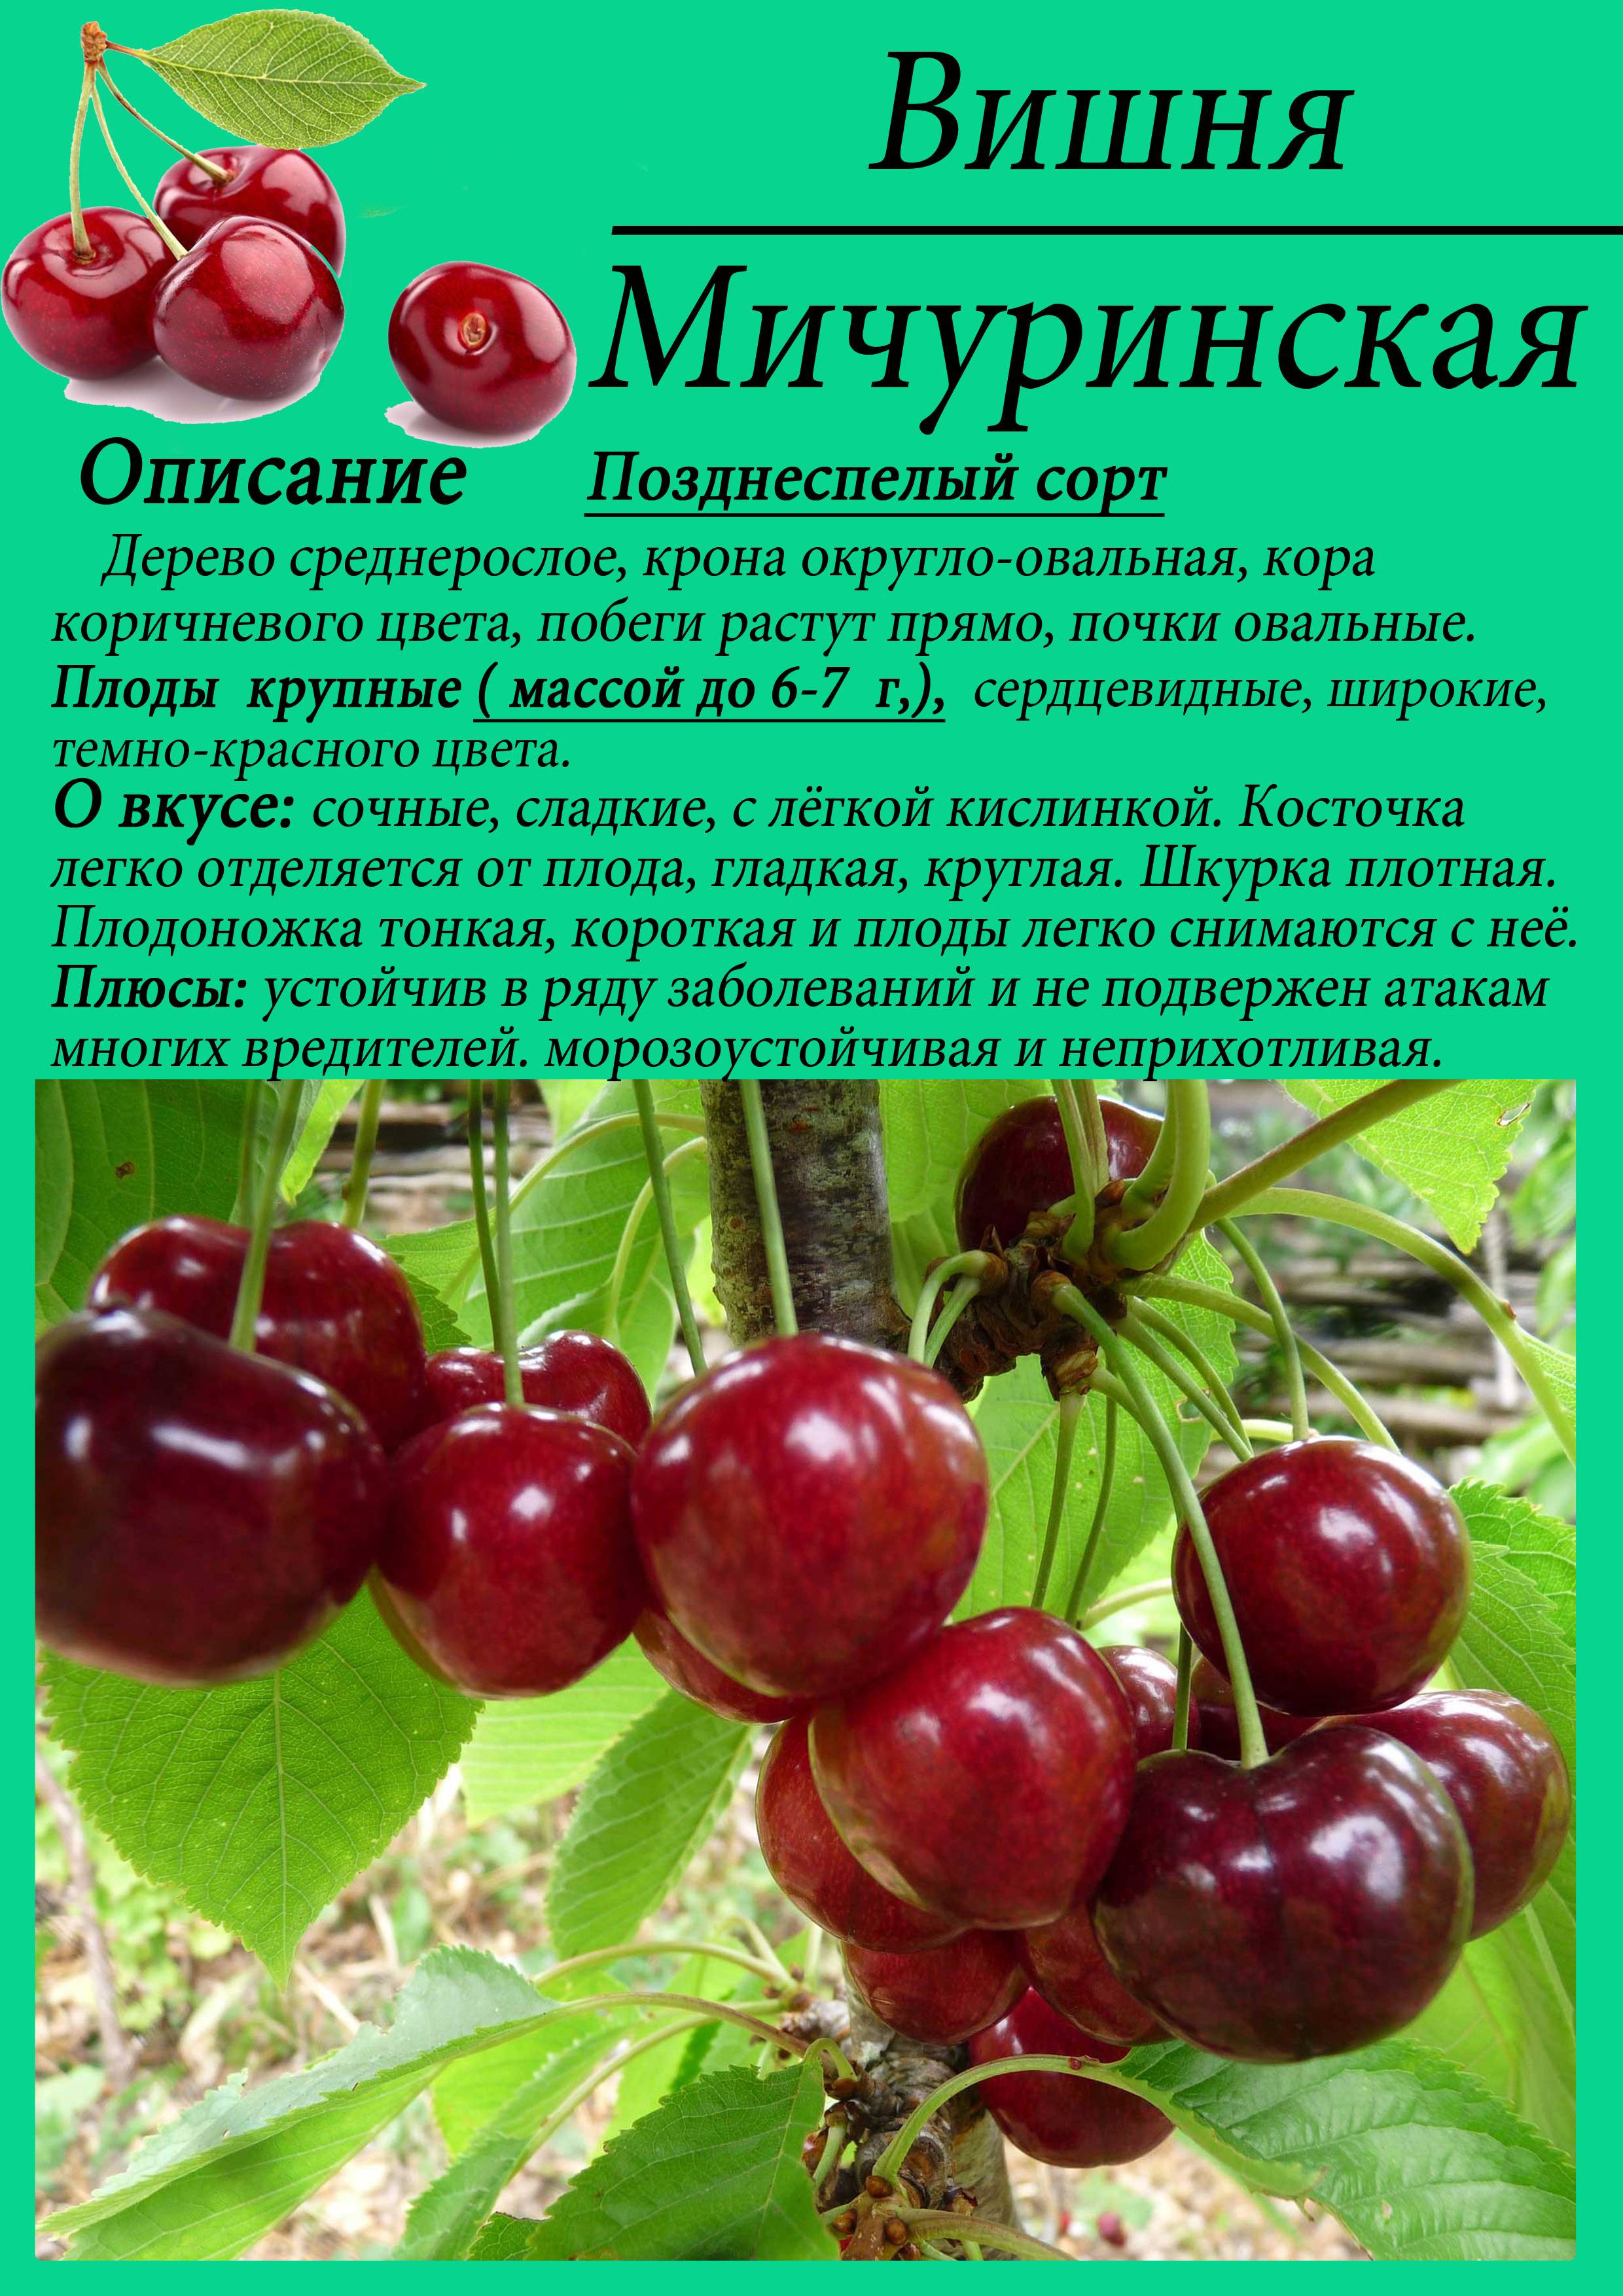 Описание лучших сортов вишни для выращивания в ленинградской области